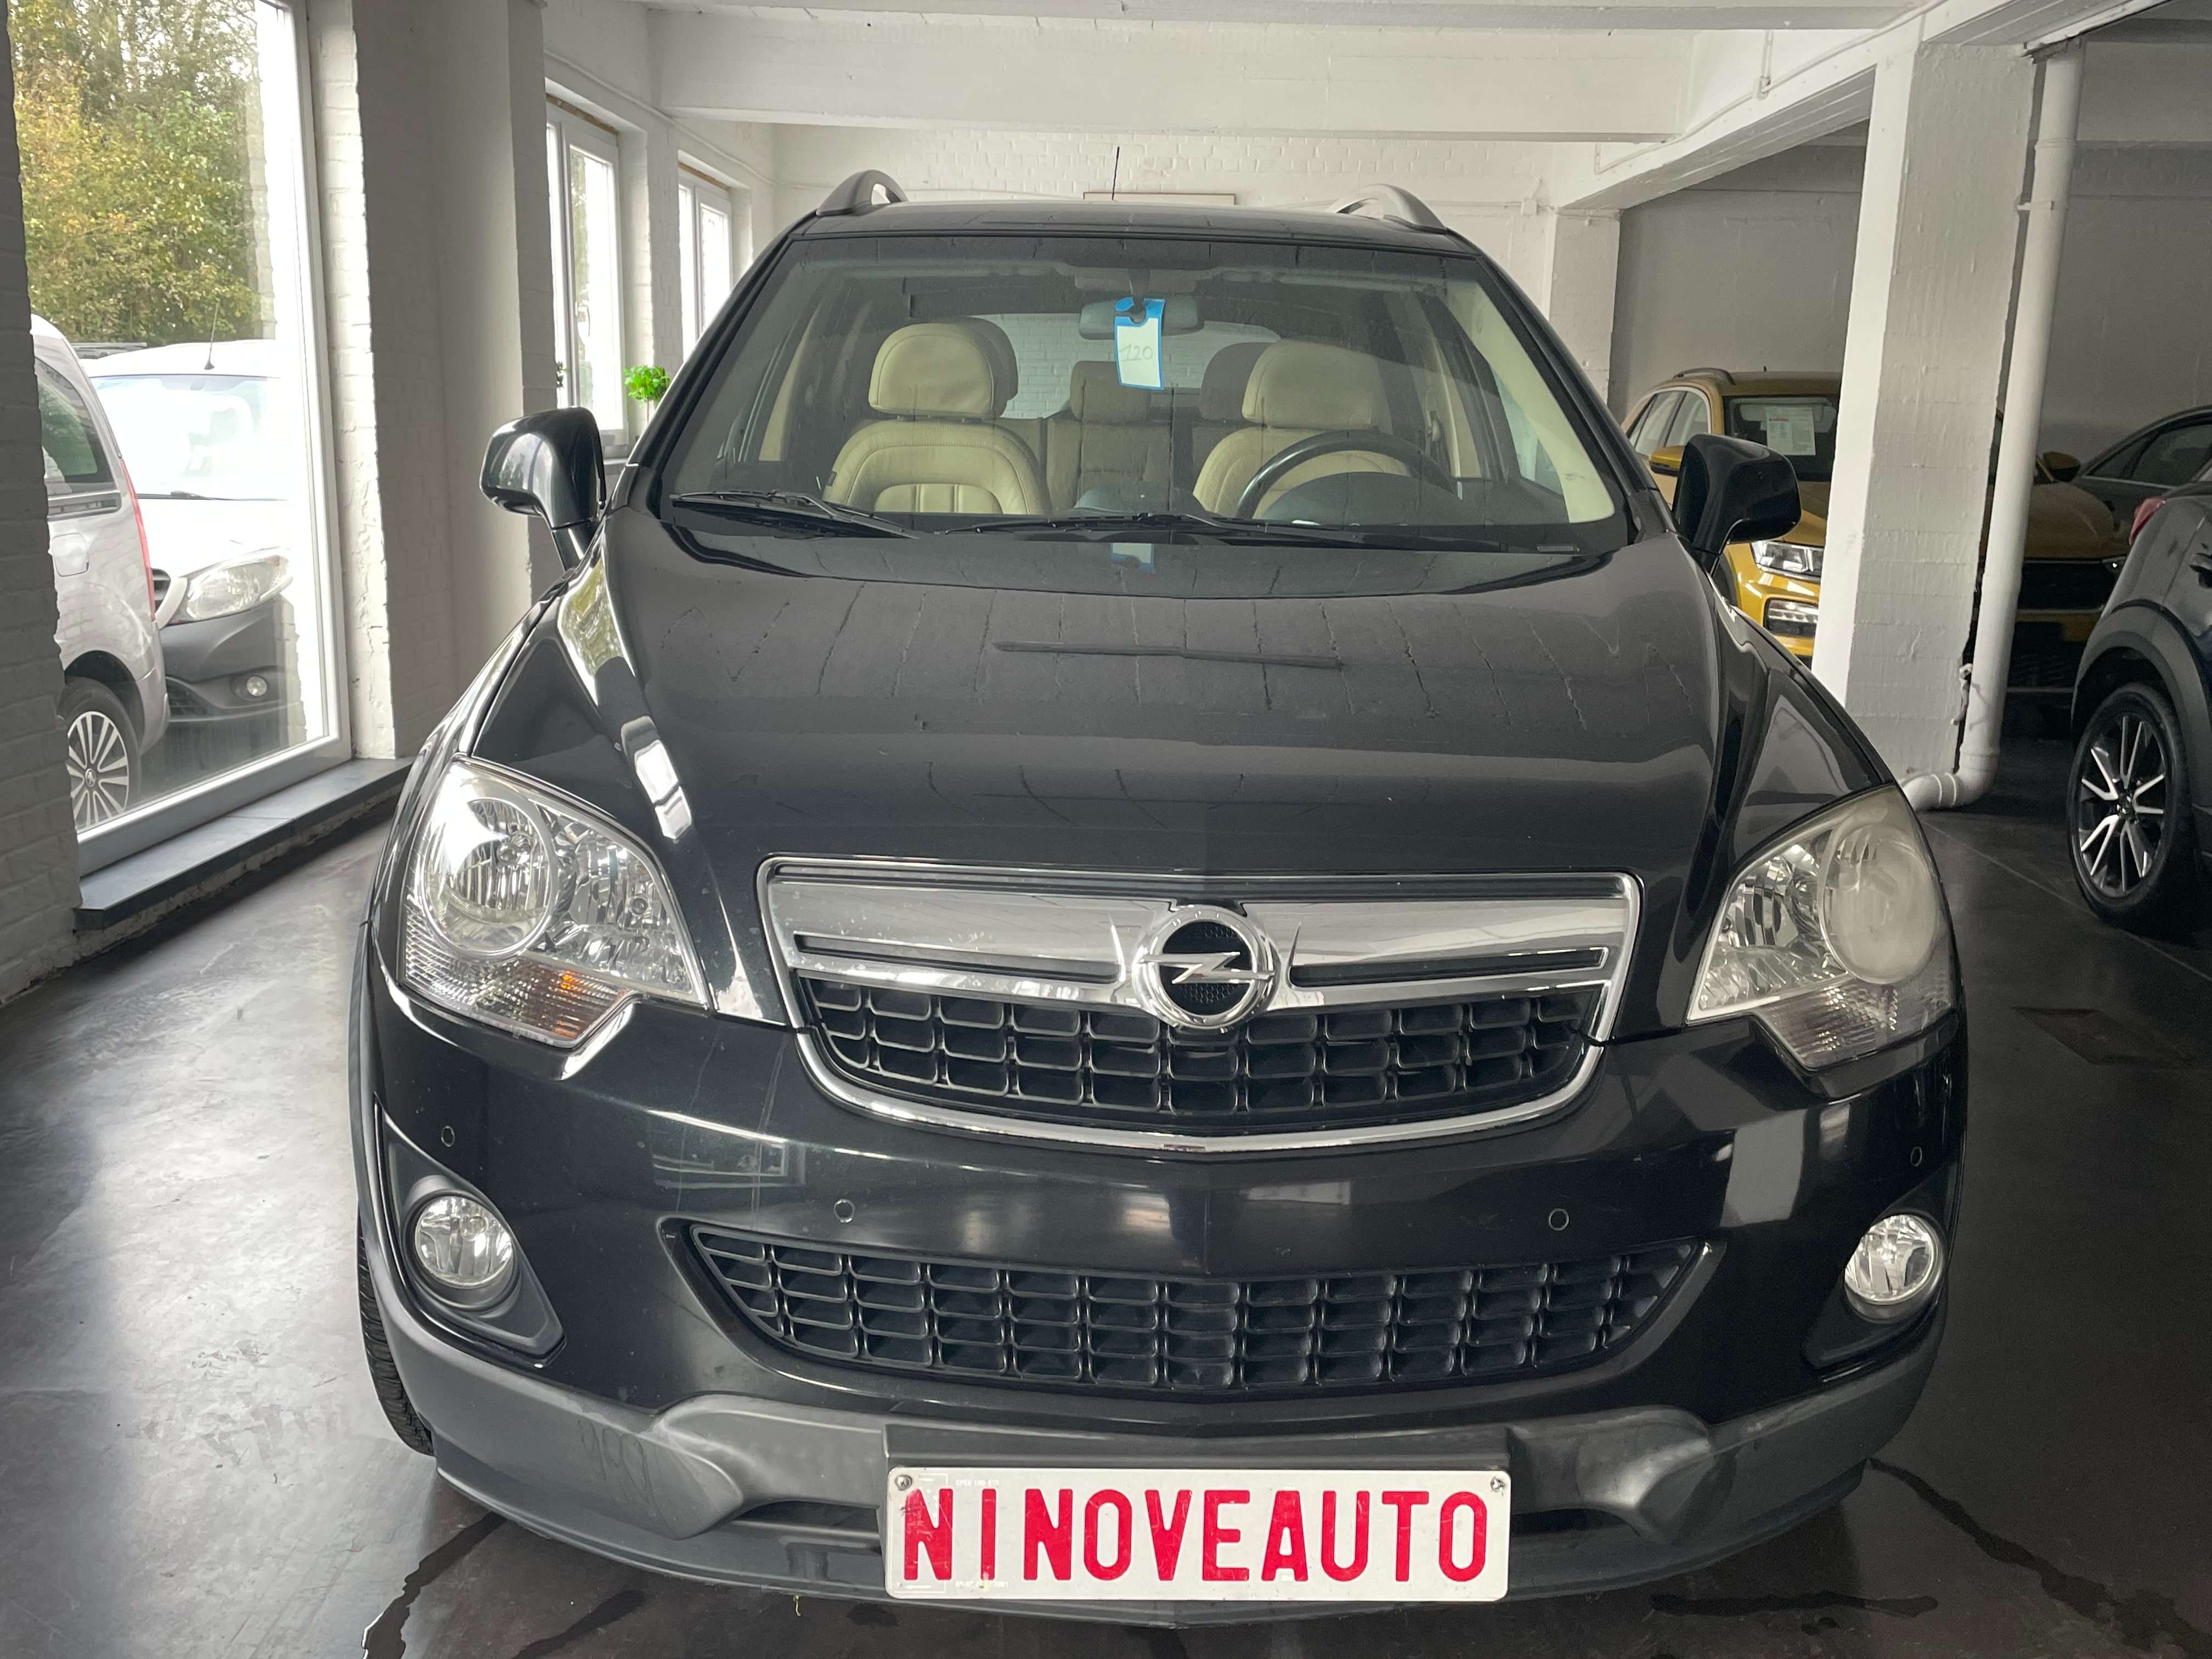 Ninove auto - Opel Antara